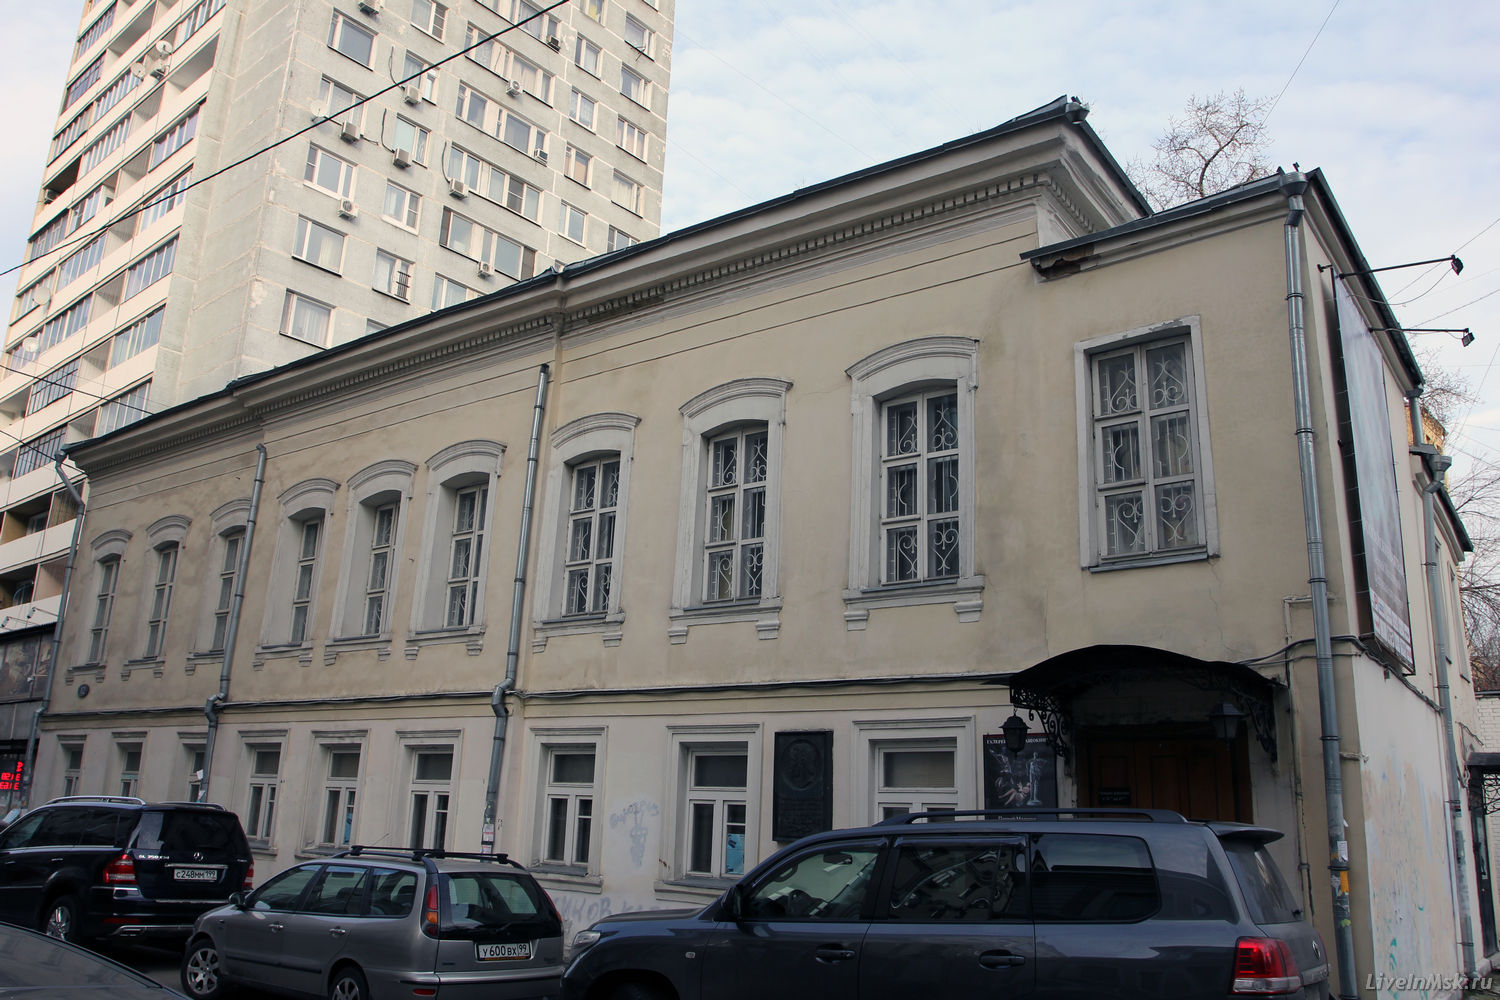 Дом Нащокина в Воротниковском переулке, фото 2014 года